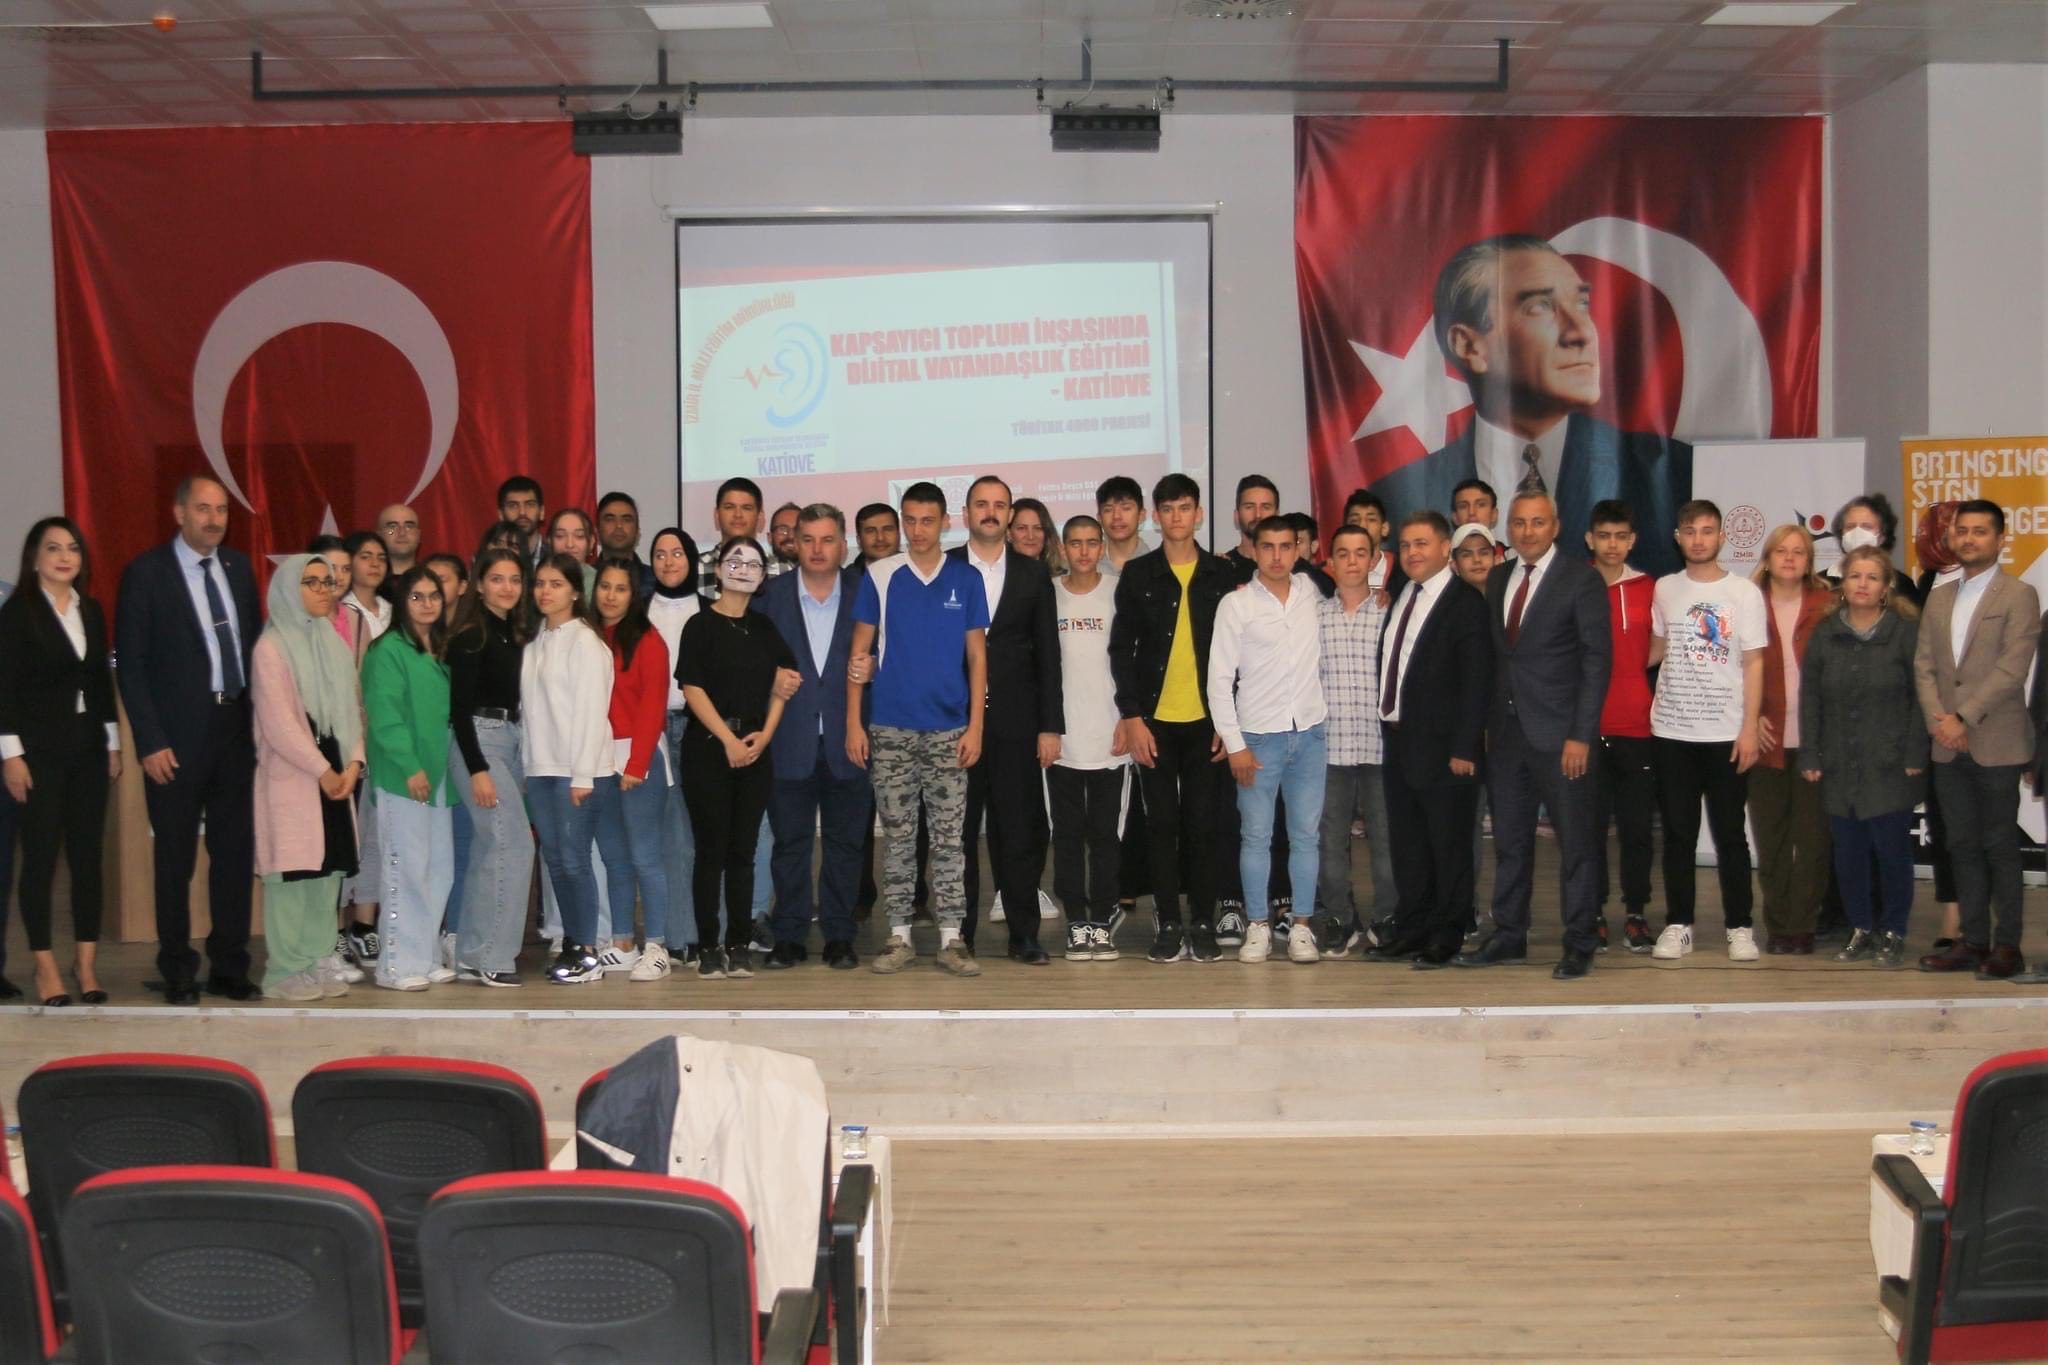 Dijital Vatandaşlık Kınık Belediyesi, Kınık Kaymakamlığı, Sosyal hizmetler İl Müdürlüğü ve İzmir İl Milli Eğitim Müdürlüğü işbirliği ile hayata geçirilen, KATİDVE (Kapsayıcı Toplum İnşasında Dijital Vatandaşlık Eğitimi) projesinin açılışı Kınık Öğretmenevi Konferans Salonu’nda düzenlenen törenle yapıldı. Türkiye çapında desteklenmeye hak kazanmış 42 TÜBİTAK 4008 projesi arasında yer alan ve işitme engelli öğrencilerin faaliyetlere katıldığı tek proje olan KATİDVE projesi ile işitme engelli öğrencilerin, iletişim bariyerlerini kaldırarak sanal dünyada karşılaştıkları tehditlere karşı farkındalık kazandırmaları ve Dijital Vatandaşlık Becerilerini geliştirmeleri hedefleniyor.
KATİDVE Projesi paydaşı ve ev sahibi Kınık Belediyesi Başkanı Dr. Sadık Doğruer, müreffeh toplumlar seviyesine ulaşmanın yolunun eğitimden geçtiğini belirterek “İlçemizde yaşayan her bir yurttaşımızın kamu imkânlarından faydalanması ve her alanda eğitim alabilmesi için birçok proje hayata geçirdik. Bu proje en çok önemsediğim projelerden birisidir. Milli Eğitim müdürlüğümüz ile birlikte işitme engelli kardeşlerimizin adaptasyon süreçlerini hızlandırarak, toplumsal yaşamda hak ettikleri yeri almalarını hedefliyoruz. Bu ilçedeki her bir fert için çalışmak boynumuzun borcudur. Eminim ki ilerleyen zamanlarda, bu eğitimi alan birçok kardeşimizin başarıları ile gurur duyacağız. İlçemize hayırlı uğurlu olsun” dedi.
İzmir İl Milli Eğitim Müdürlüğü Proje Yürütücüsü Fatma Beyza Baş konuşmasında zamanın ruhuna işaret ederek “Özel gereksinimli bireylerimize yönelik çalışmalarımızı sürdürüyor, yeteneklerini geliştirmek, toplumla bütünleşmelerini sağlamak ve onlar için daha erişilebilir bir dünya düzeni oluşturmak için tüm imkânlarımızı seferber ediyoruz” dedi. Açılış törenine; Kınık Kaymakamı Abdurrahman Çelebi, Kınık Belediye Başkanı Dr. Sadık Doğruer, İzmir İl Milli Eğitim Müdürlüğü Proje Yürütücüsü Fatma Beyza Baş, Kınık Öğretmenevi Müdürü Soner Oğul, Halk Eğitim Merkezi Müdürü Fatih Sakin, İlçe Milli Eğitim Müdürü Ömer Derelioğlu, Bergama Aile Sosyal Hizmetler Merkezi Müdürü Özcan Demir, Mert Öztüre Özel Eğitim Lisesi Müdürü Mehmet Şahin ve Müdür Başyardımcısı Ahmet Yiğit, ilçede ve proje kapsamında görev yapan eğitimcilerin yanı sıra öğrenciler ve veliler de katıldı.